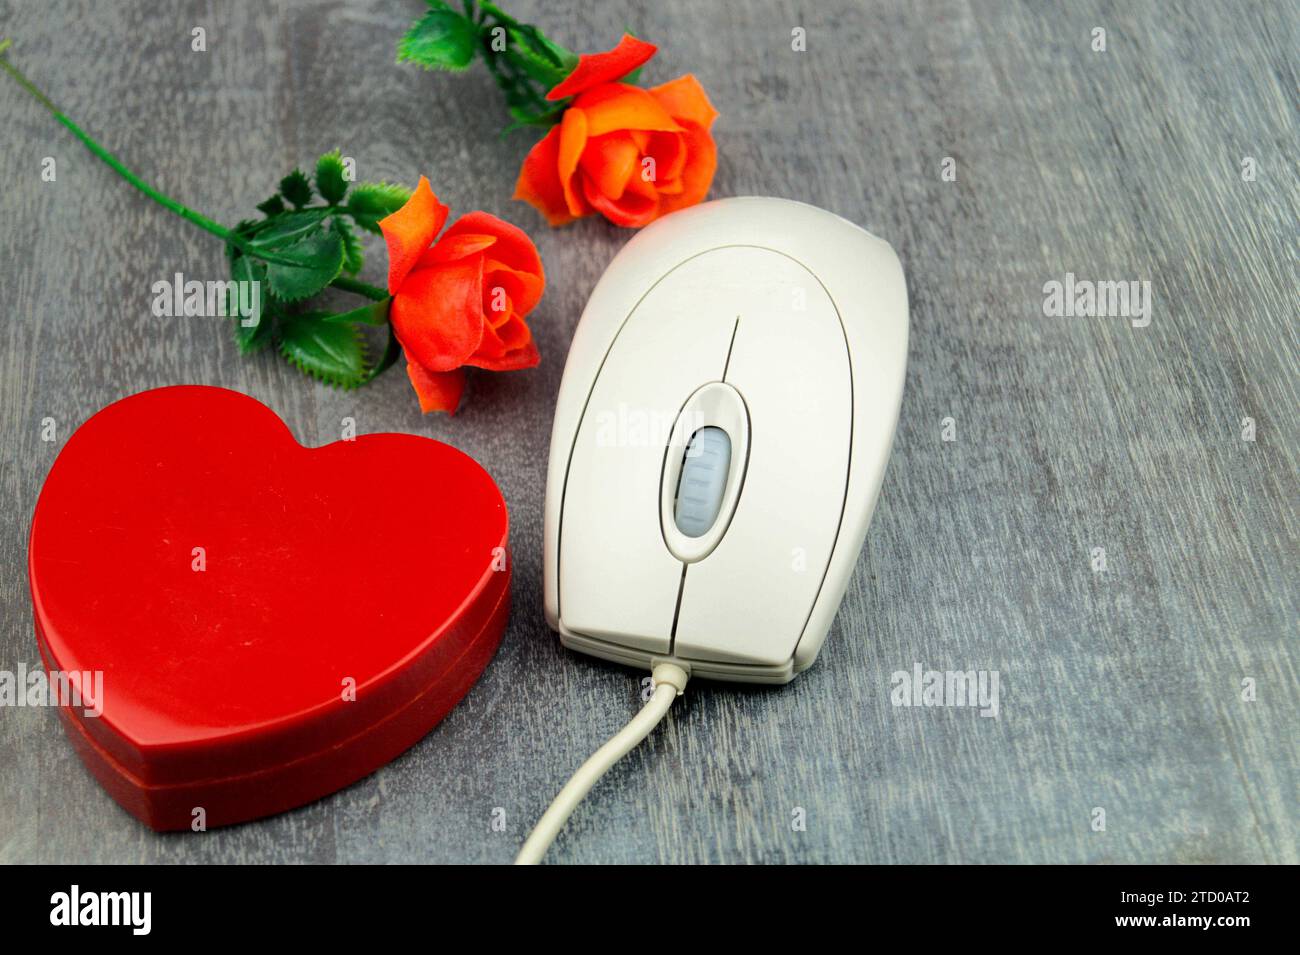 Rotes Herz und rote Rosen mit Computermaus, symbolisches Bild der Liebe online Stockfoto